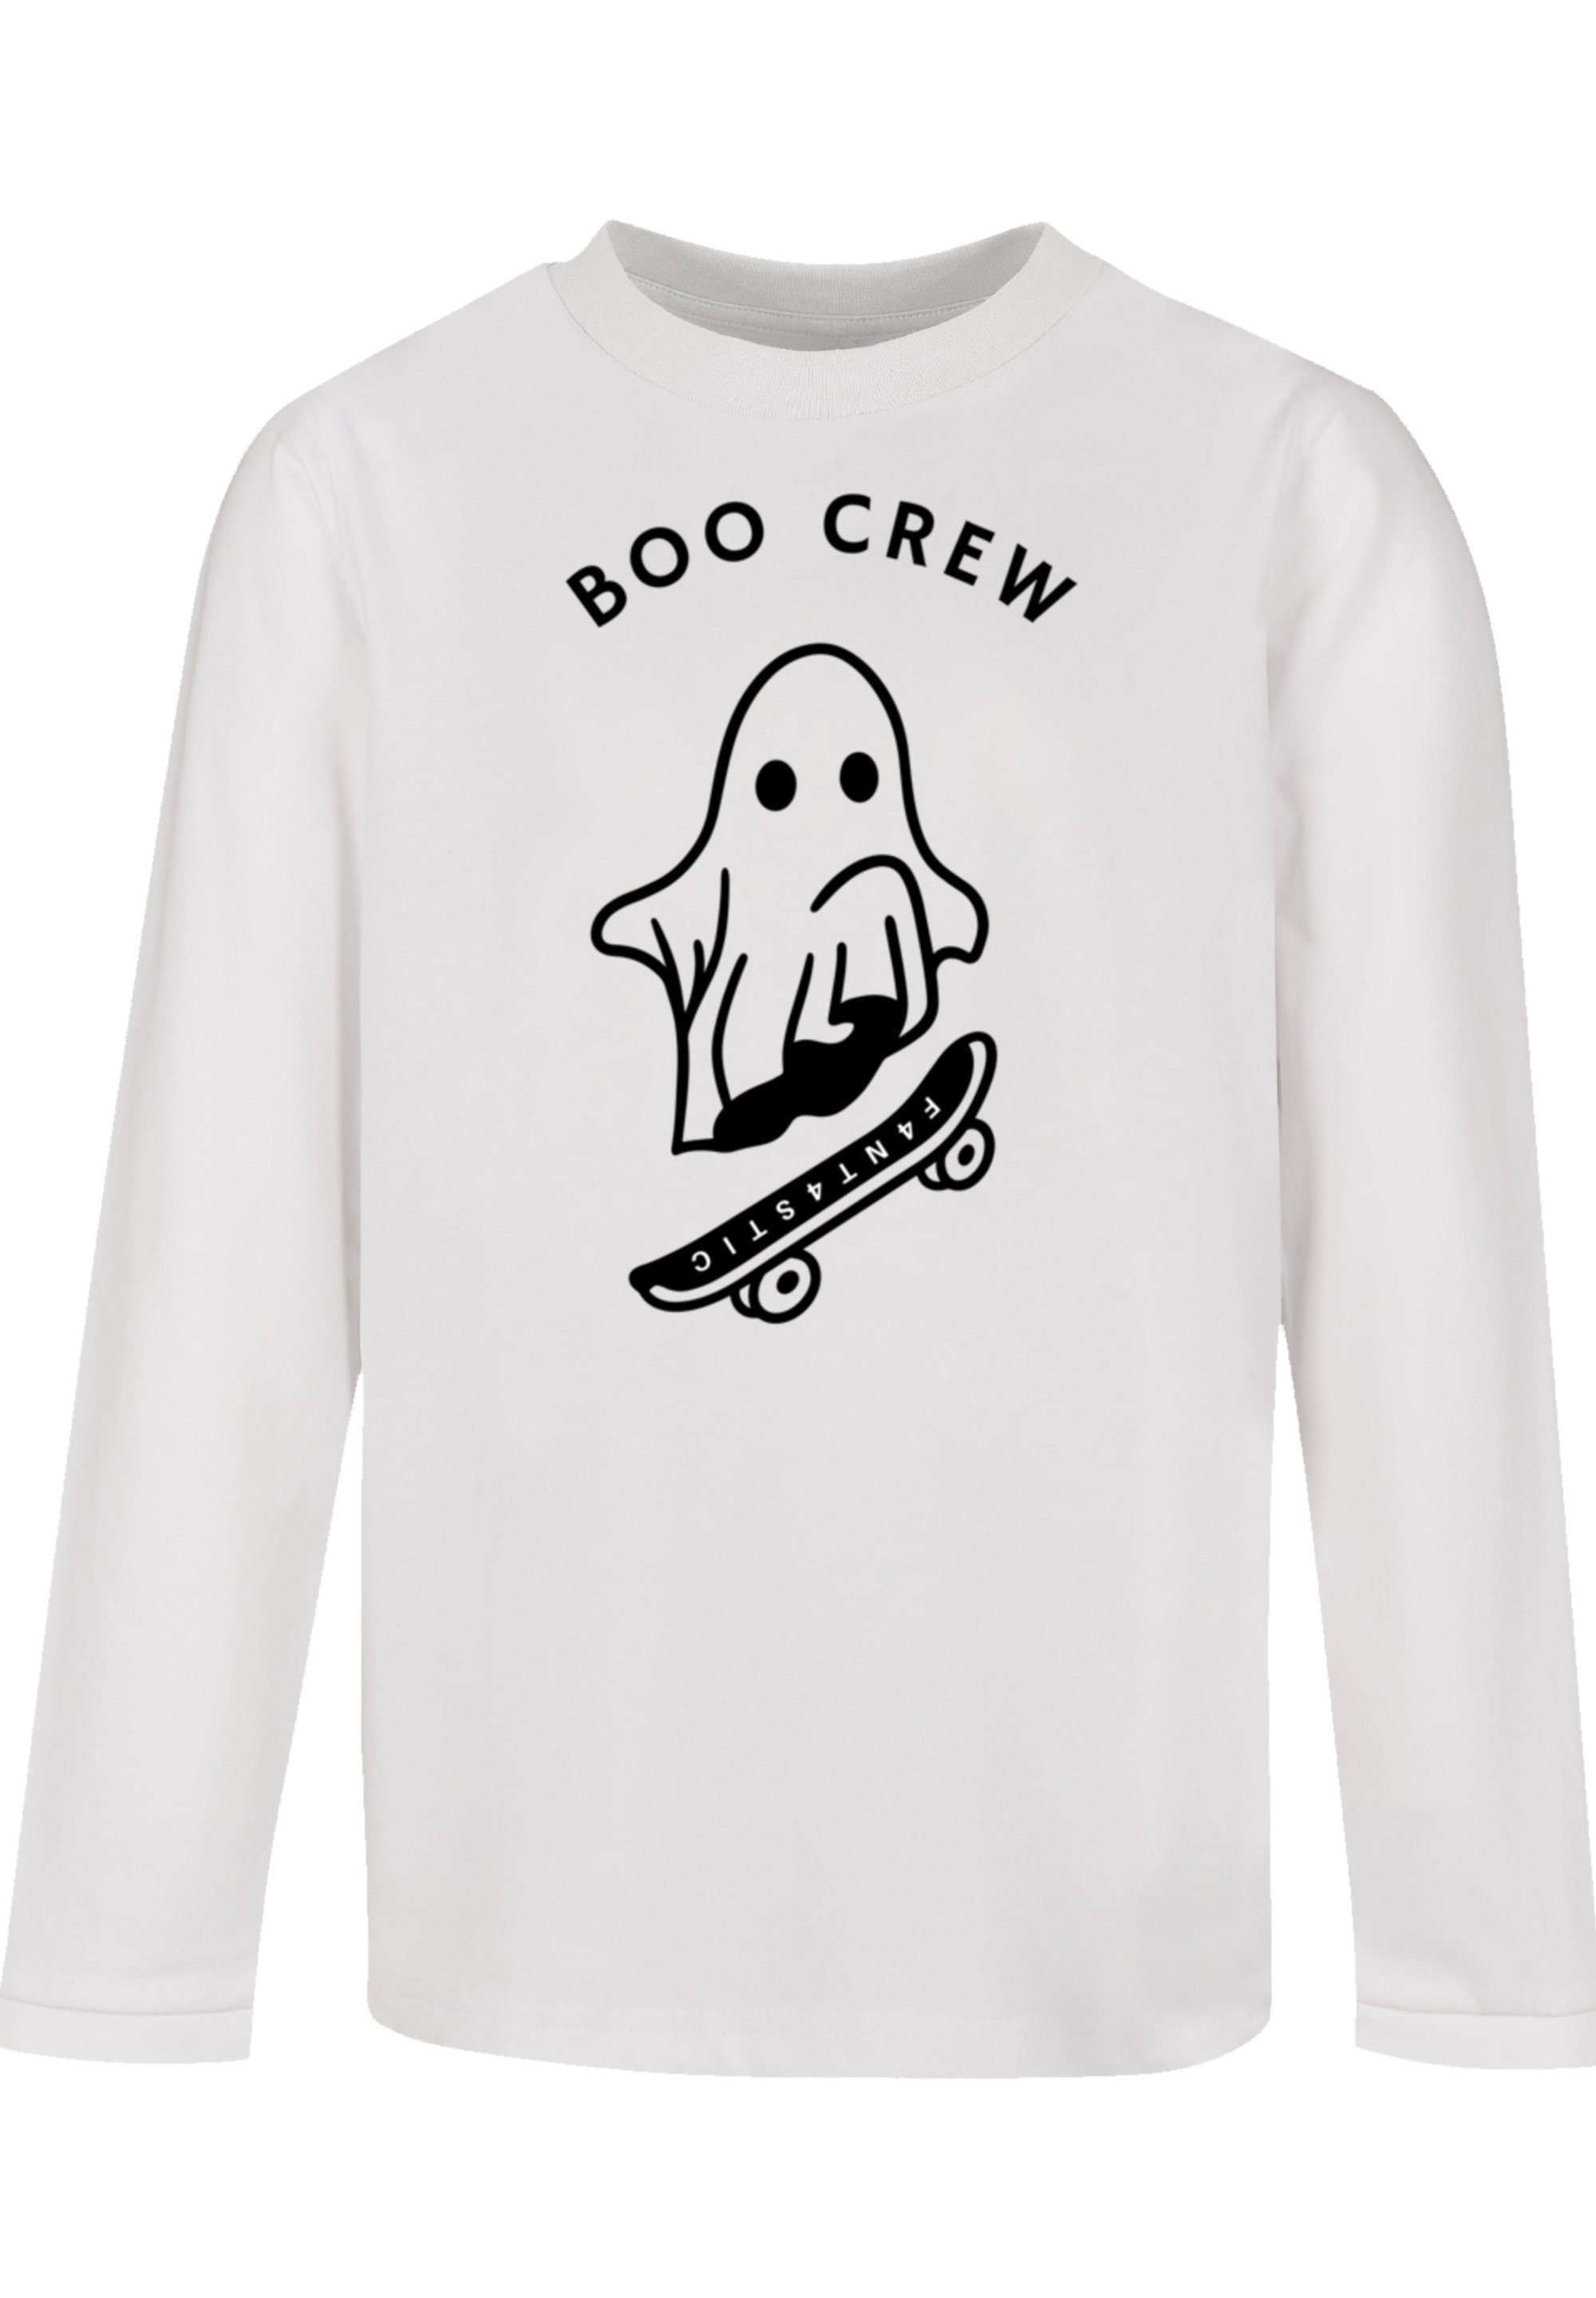 Crew F4NT4STIC Ärmelbündchen und T-Shirt Schnitt breite Lockerer Print, Halloween Boo